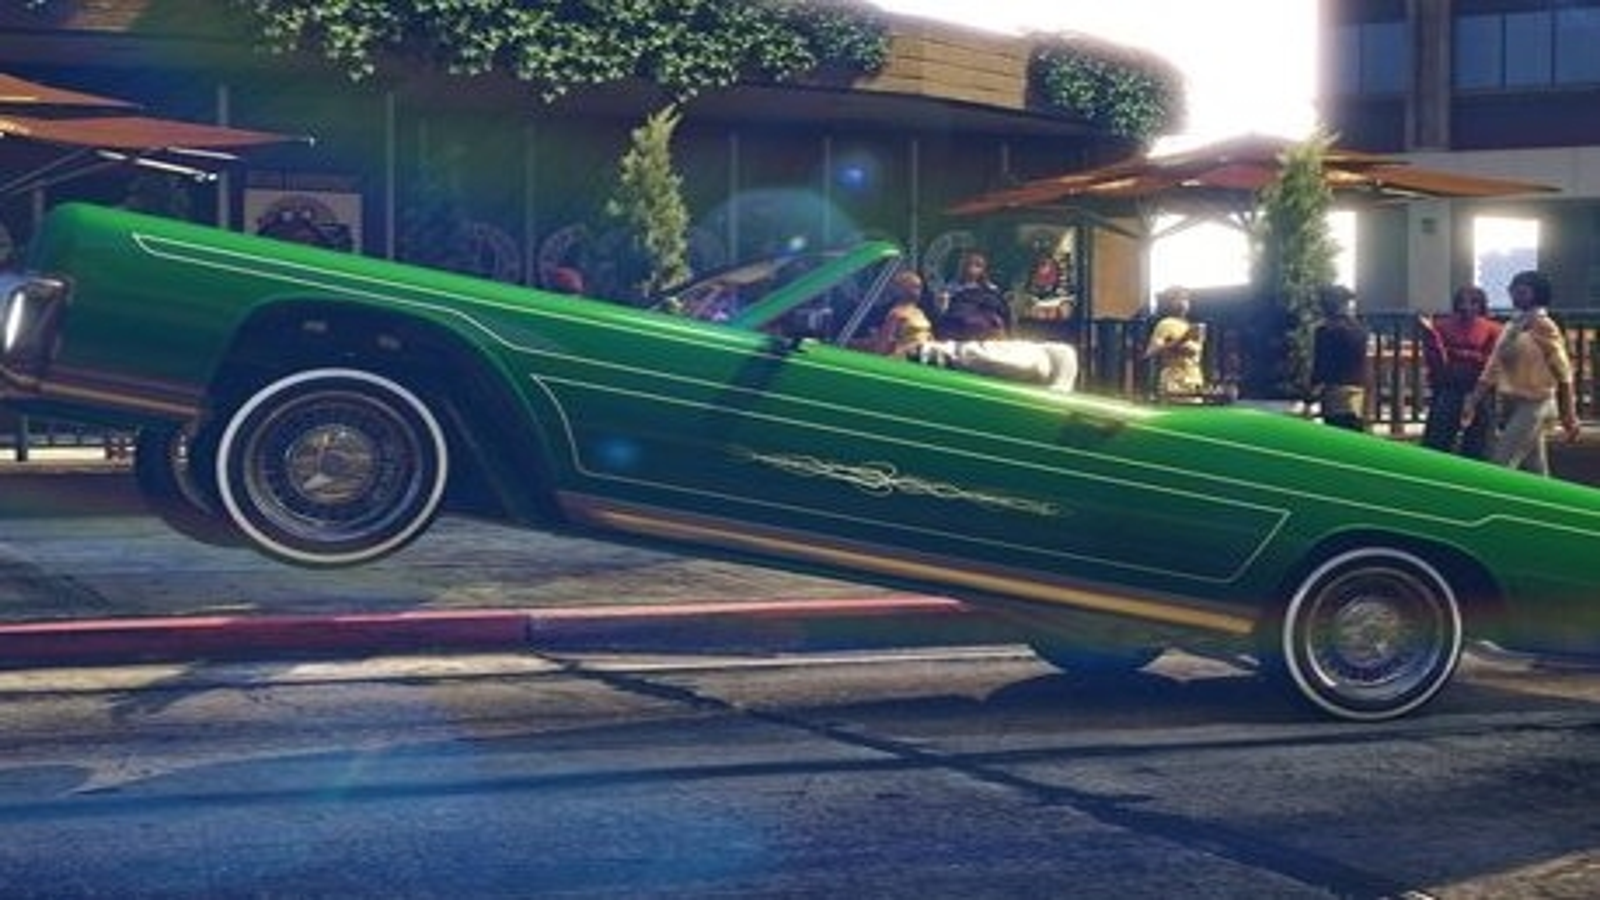 GTA San Andreas Lowrider  Carros de luxo, Carros, Rostos de meme